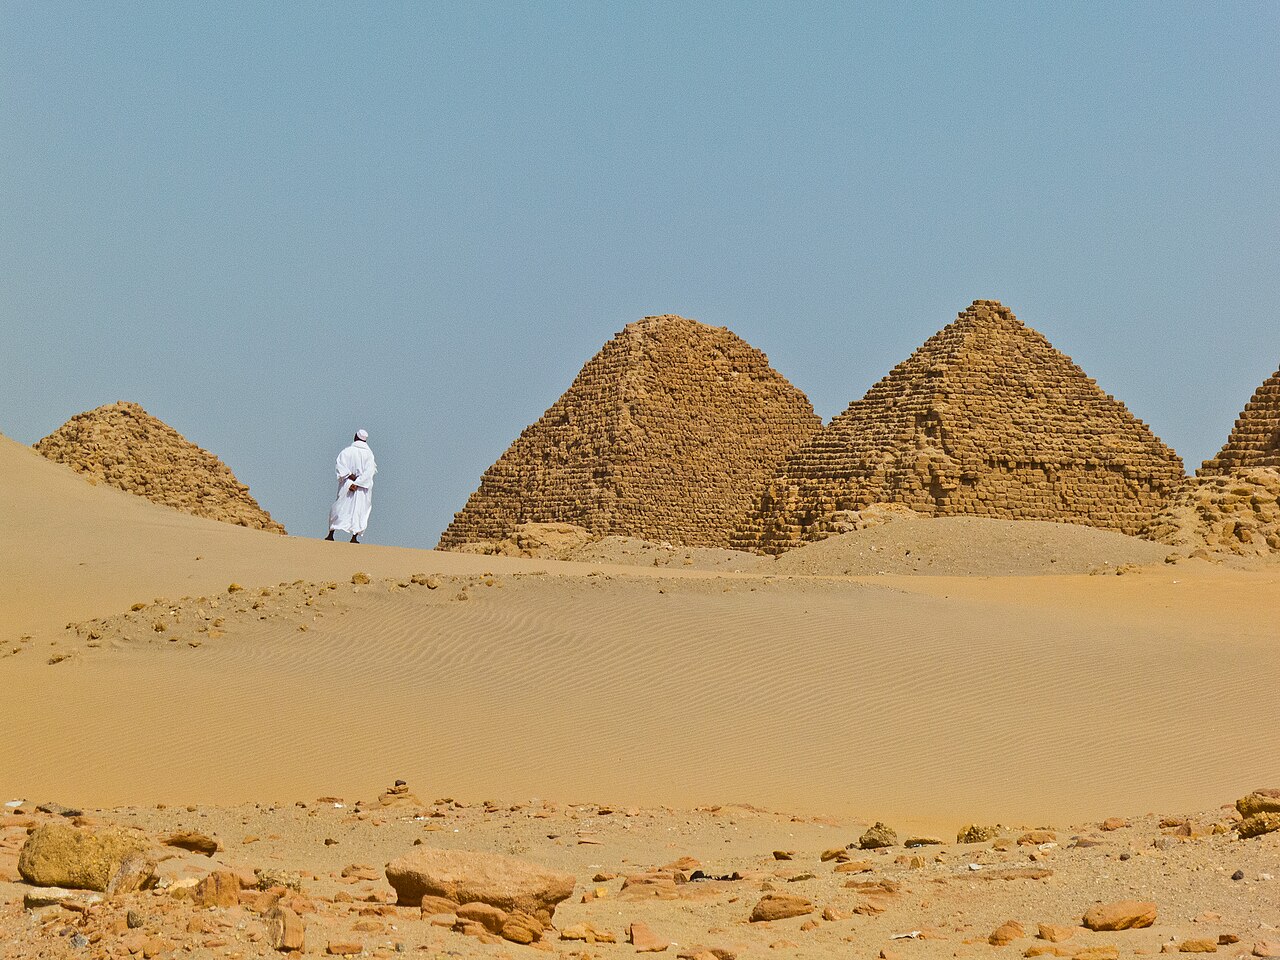 1280px-Sudan_Nuri_Pyramids_2012a.jpg